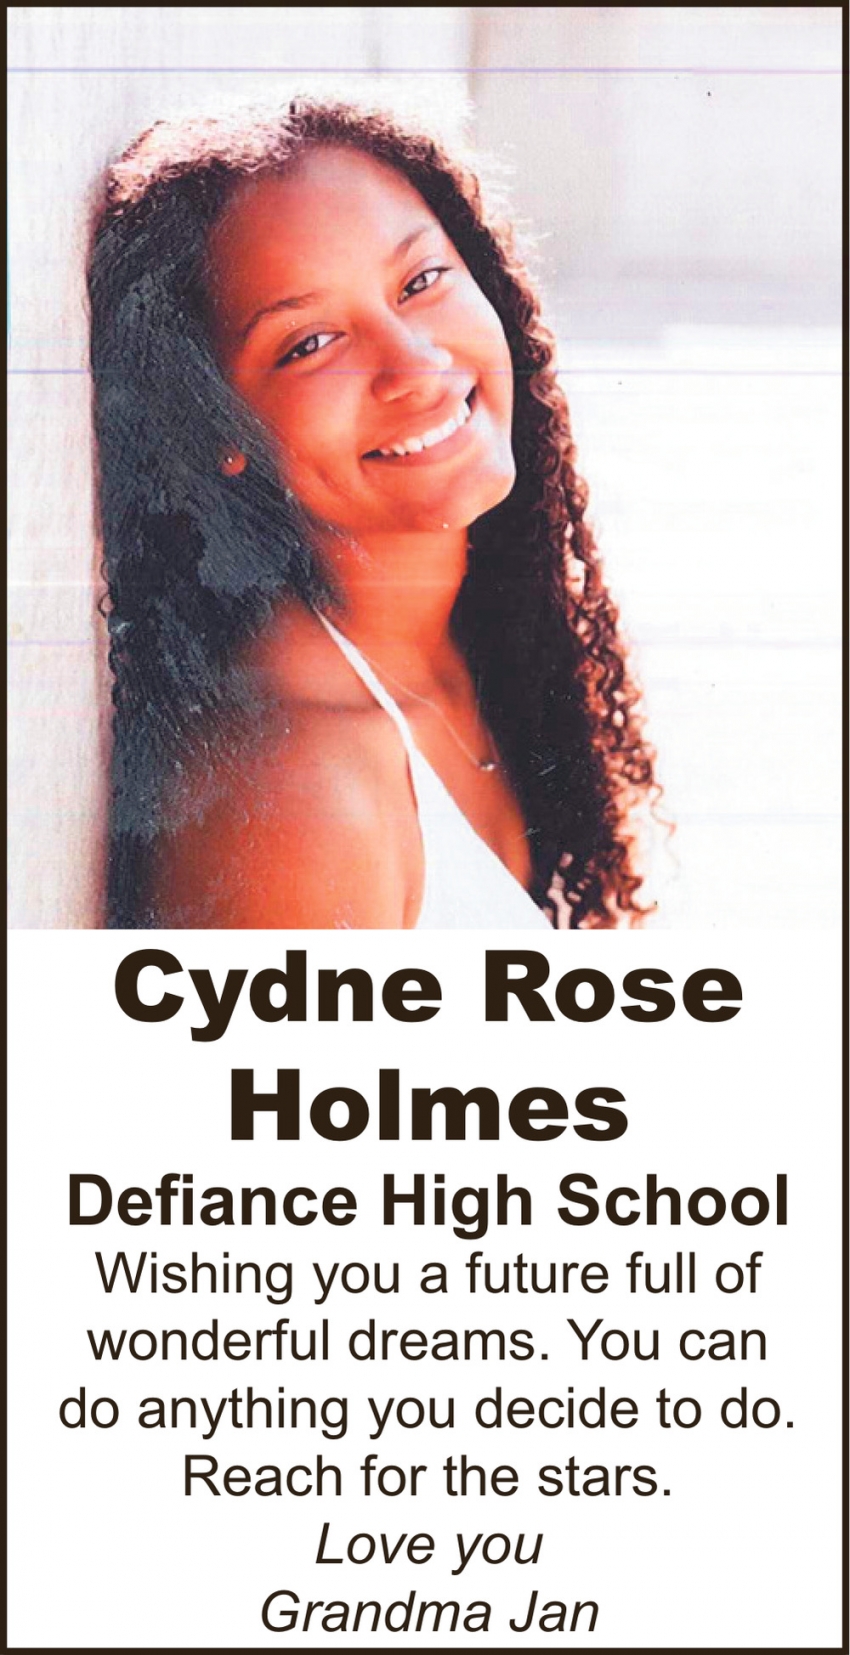 Cydne Rose Holmes